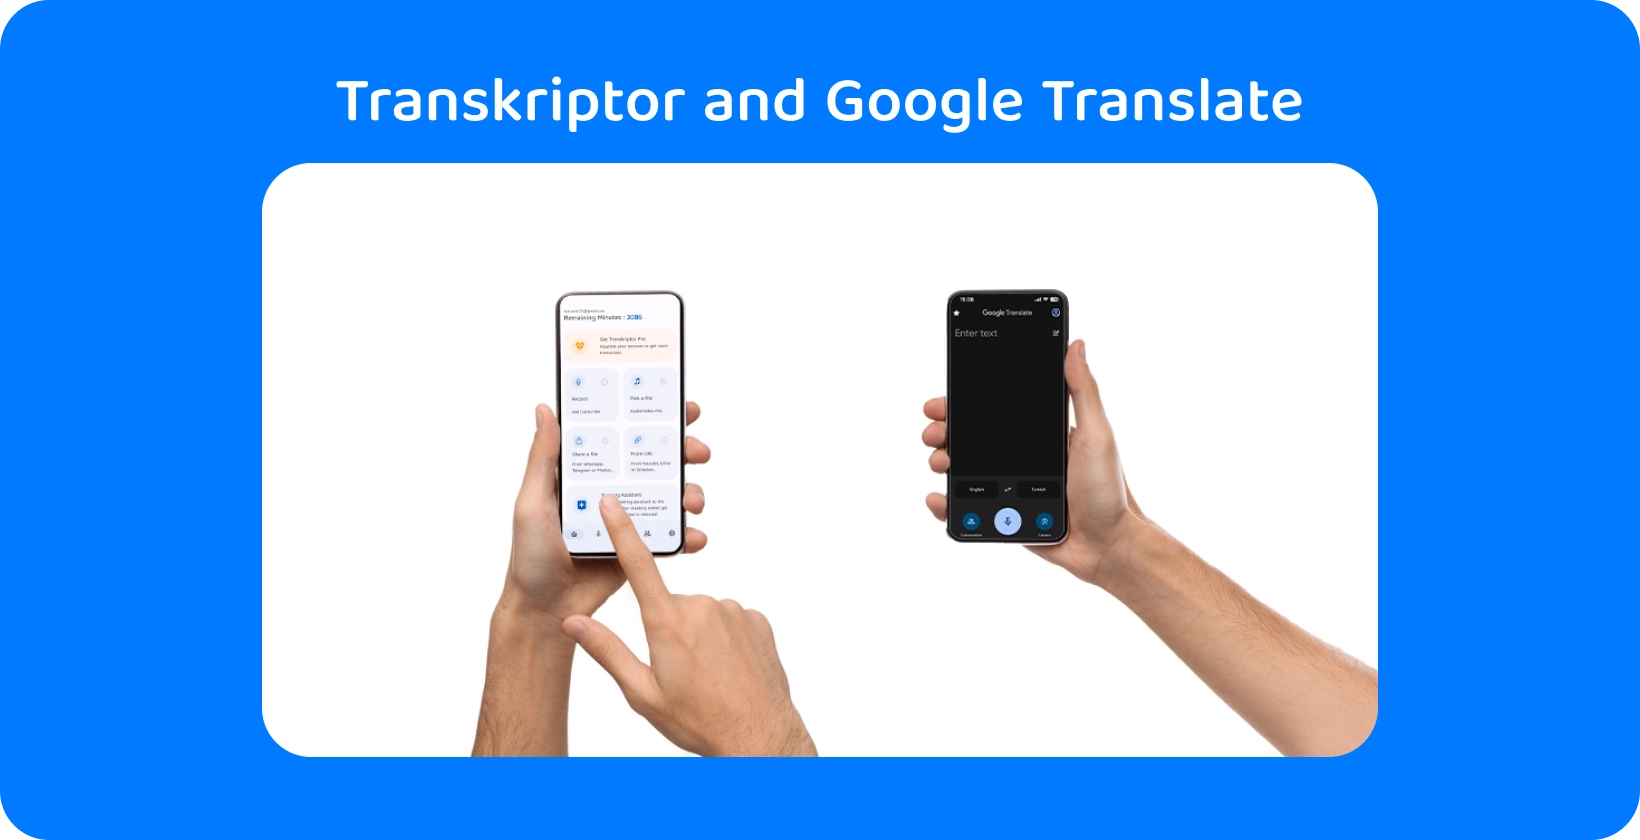 يدان تحملان هواتف ذكية مزودة ب Transkriptor وترجمة Google ، مما يدل على النسخ الصوتي والترجمة.